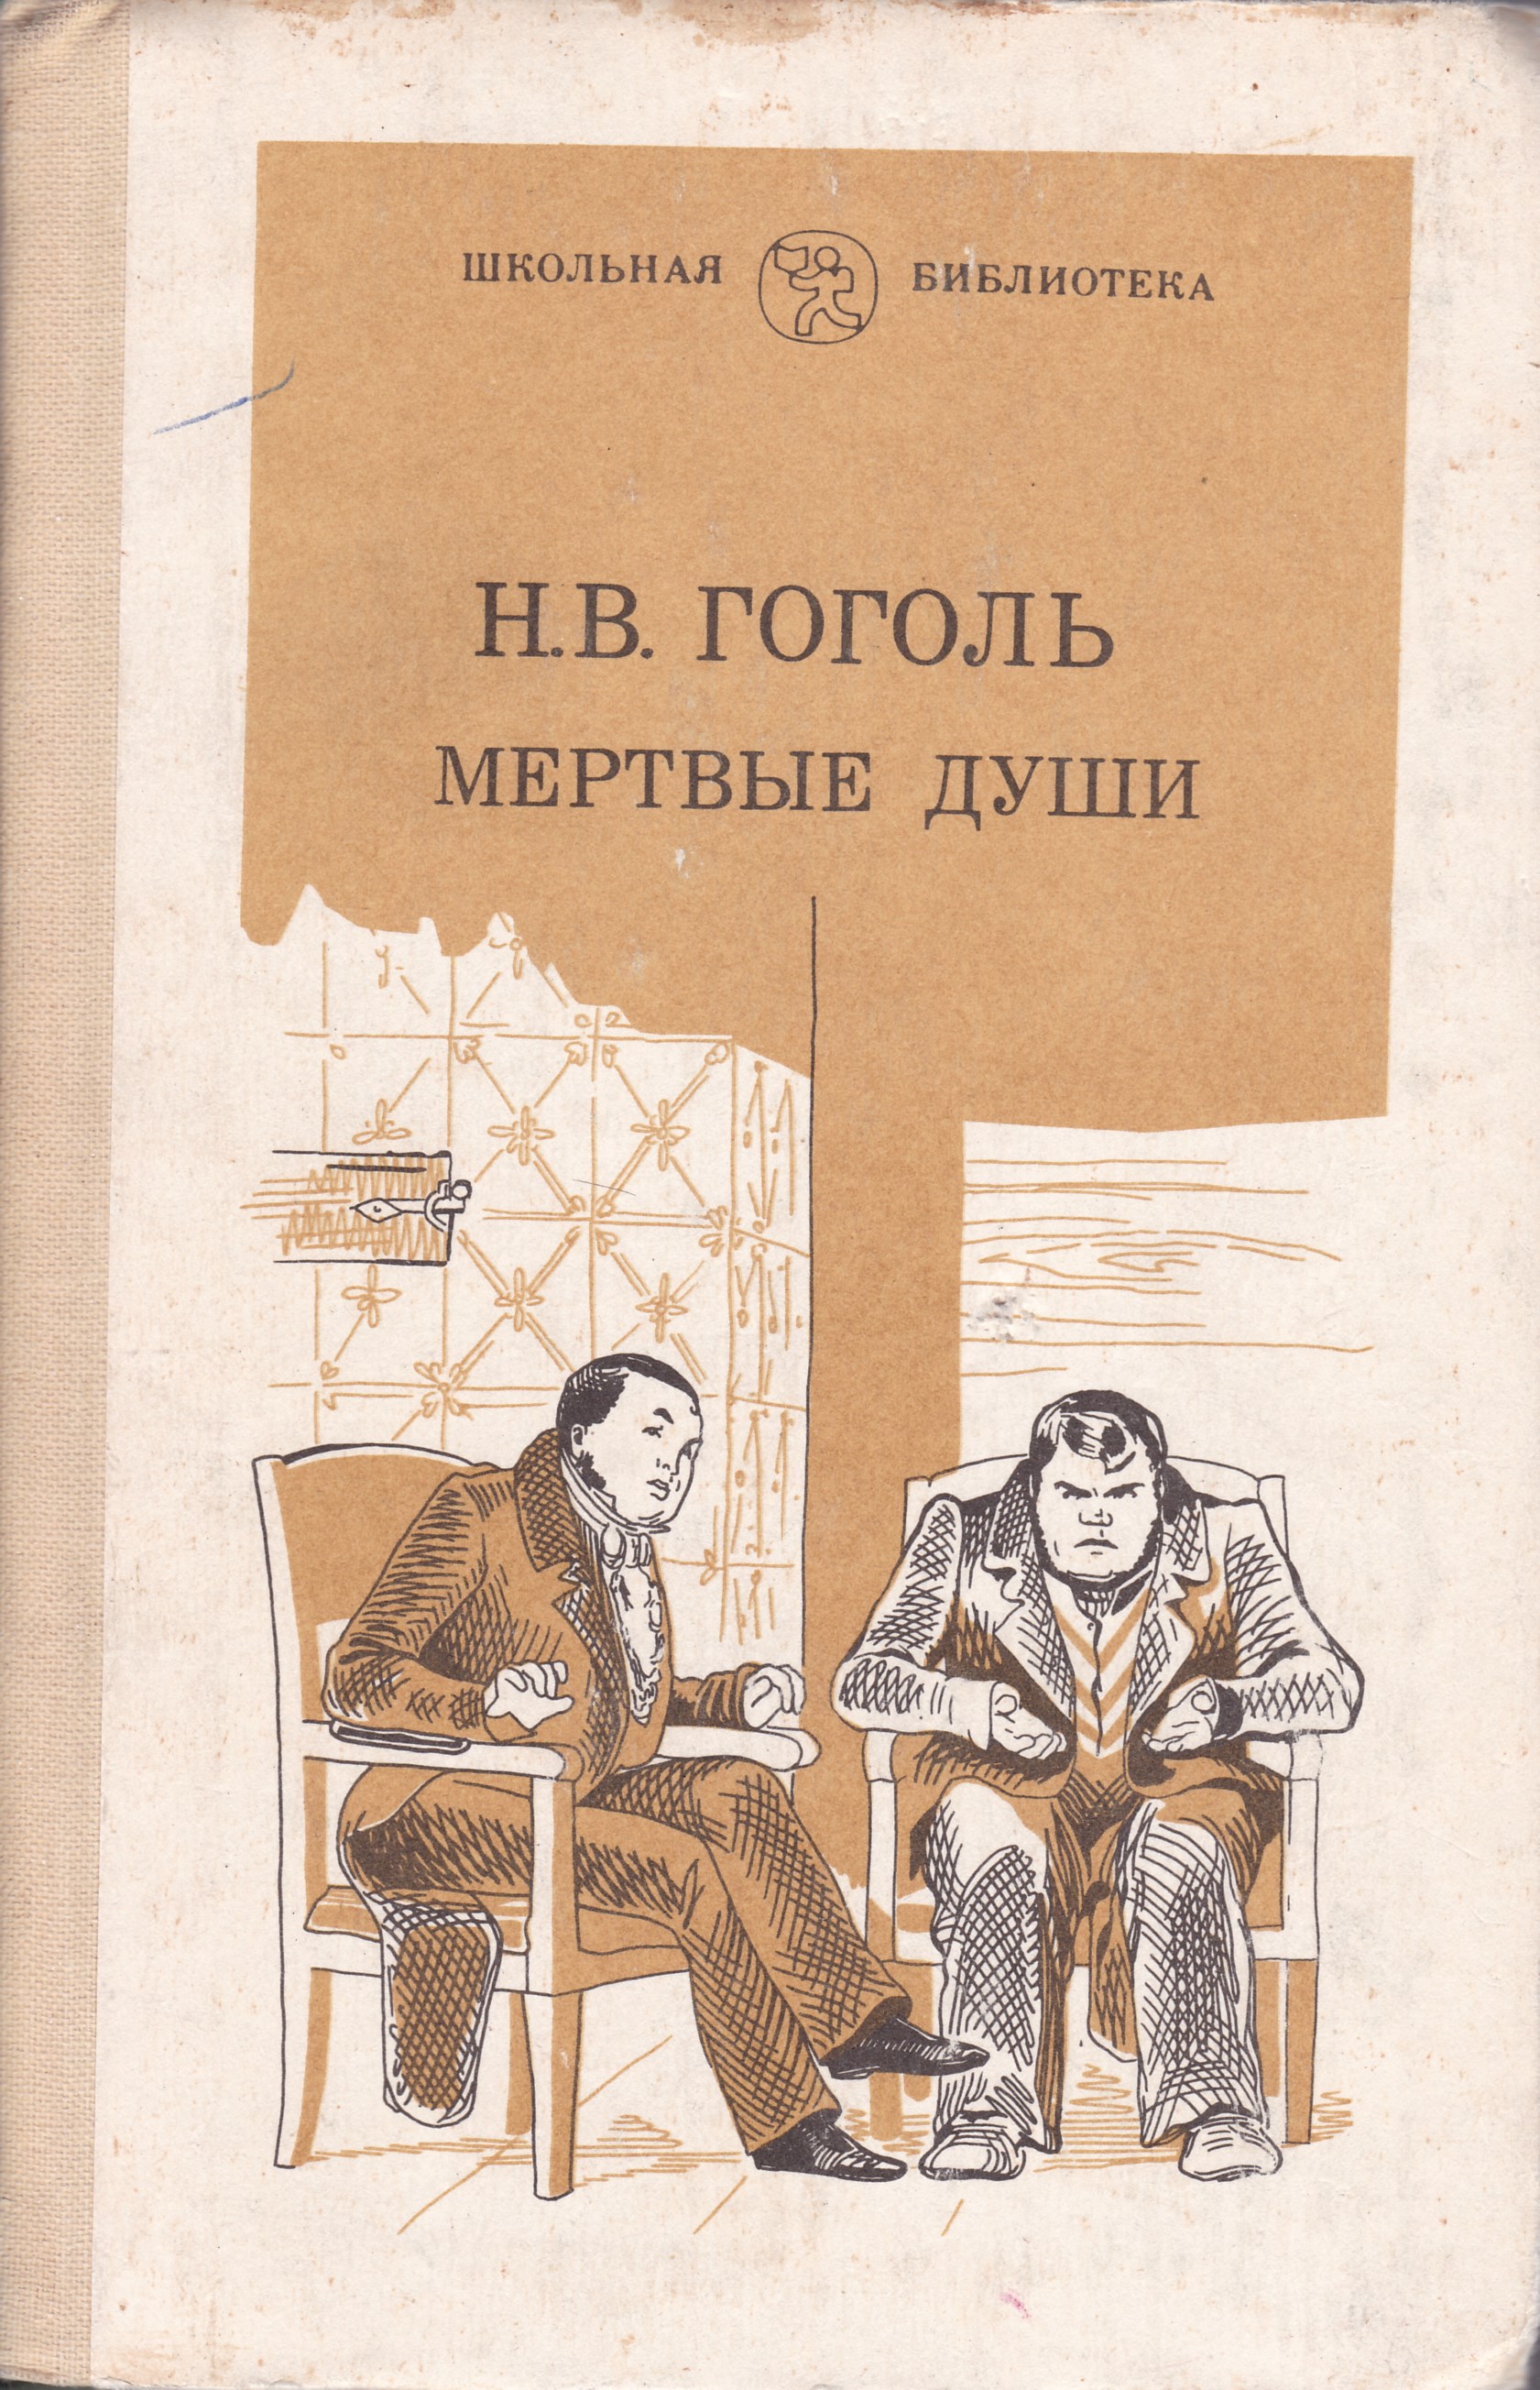 Мертвые души купить книгу. Гоголь мертвые души Школьная библиотека. Гоголь н. в. "мертвые души" 1839. Гоголь мертвые души книга.